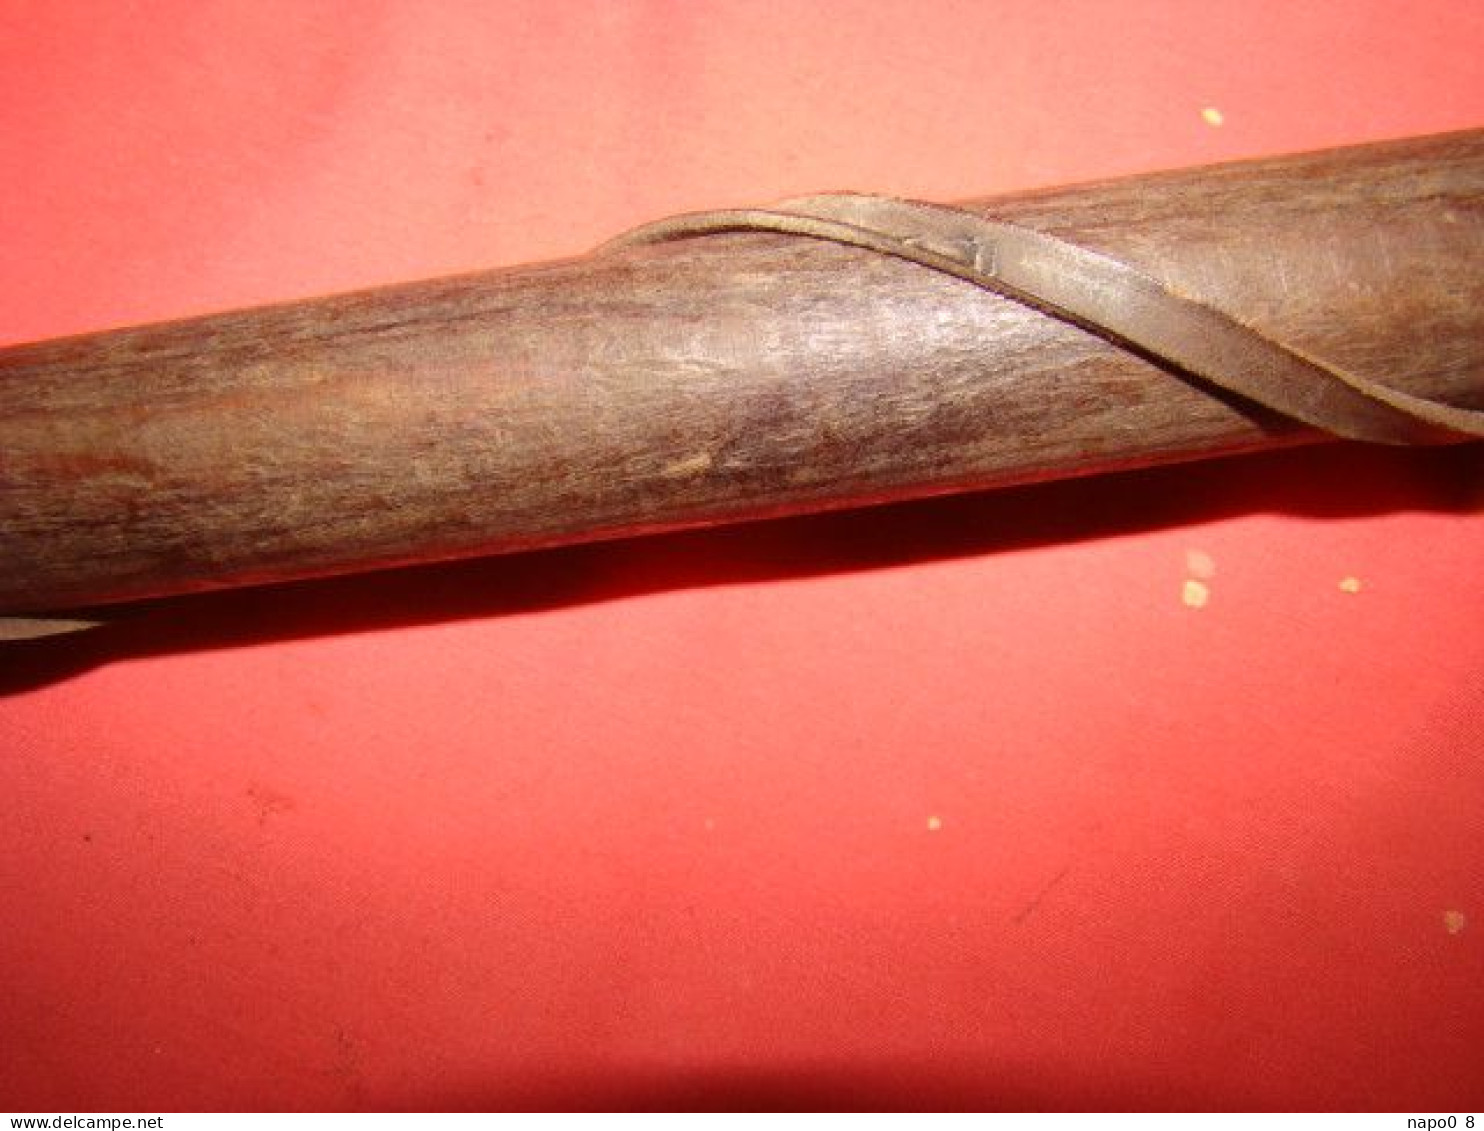 reproduction d'un fer d'arme d'hast époque médiévale ( pour théâtre ou reconstitution historique )